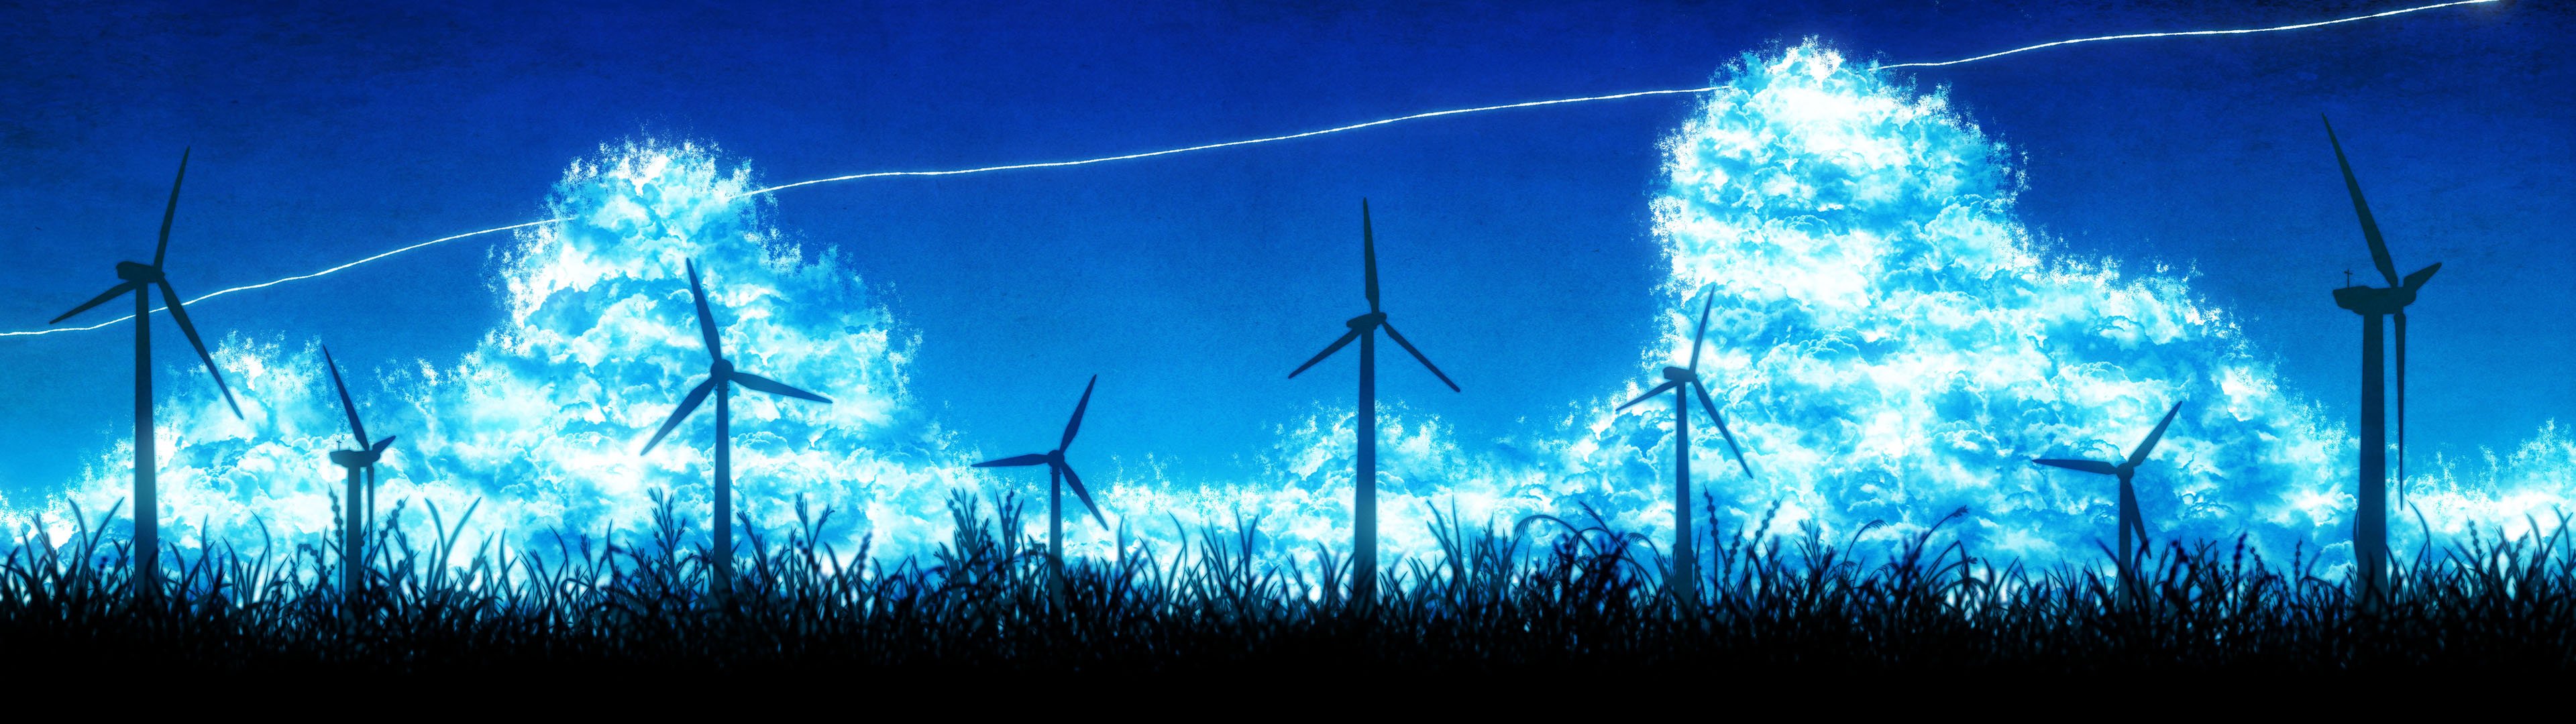 anime, original, scenery, wind turbine